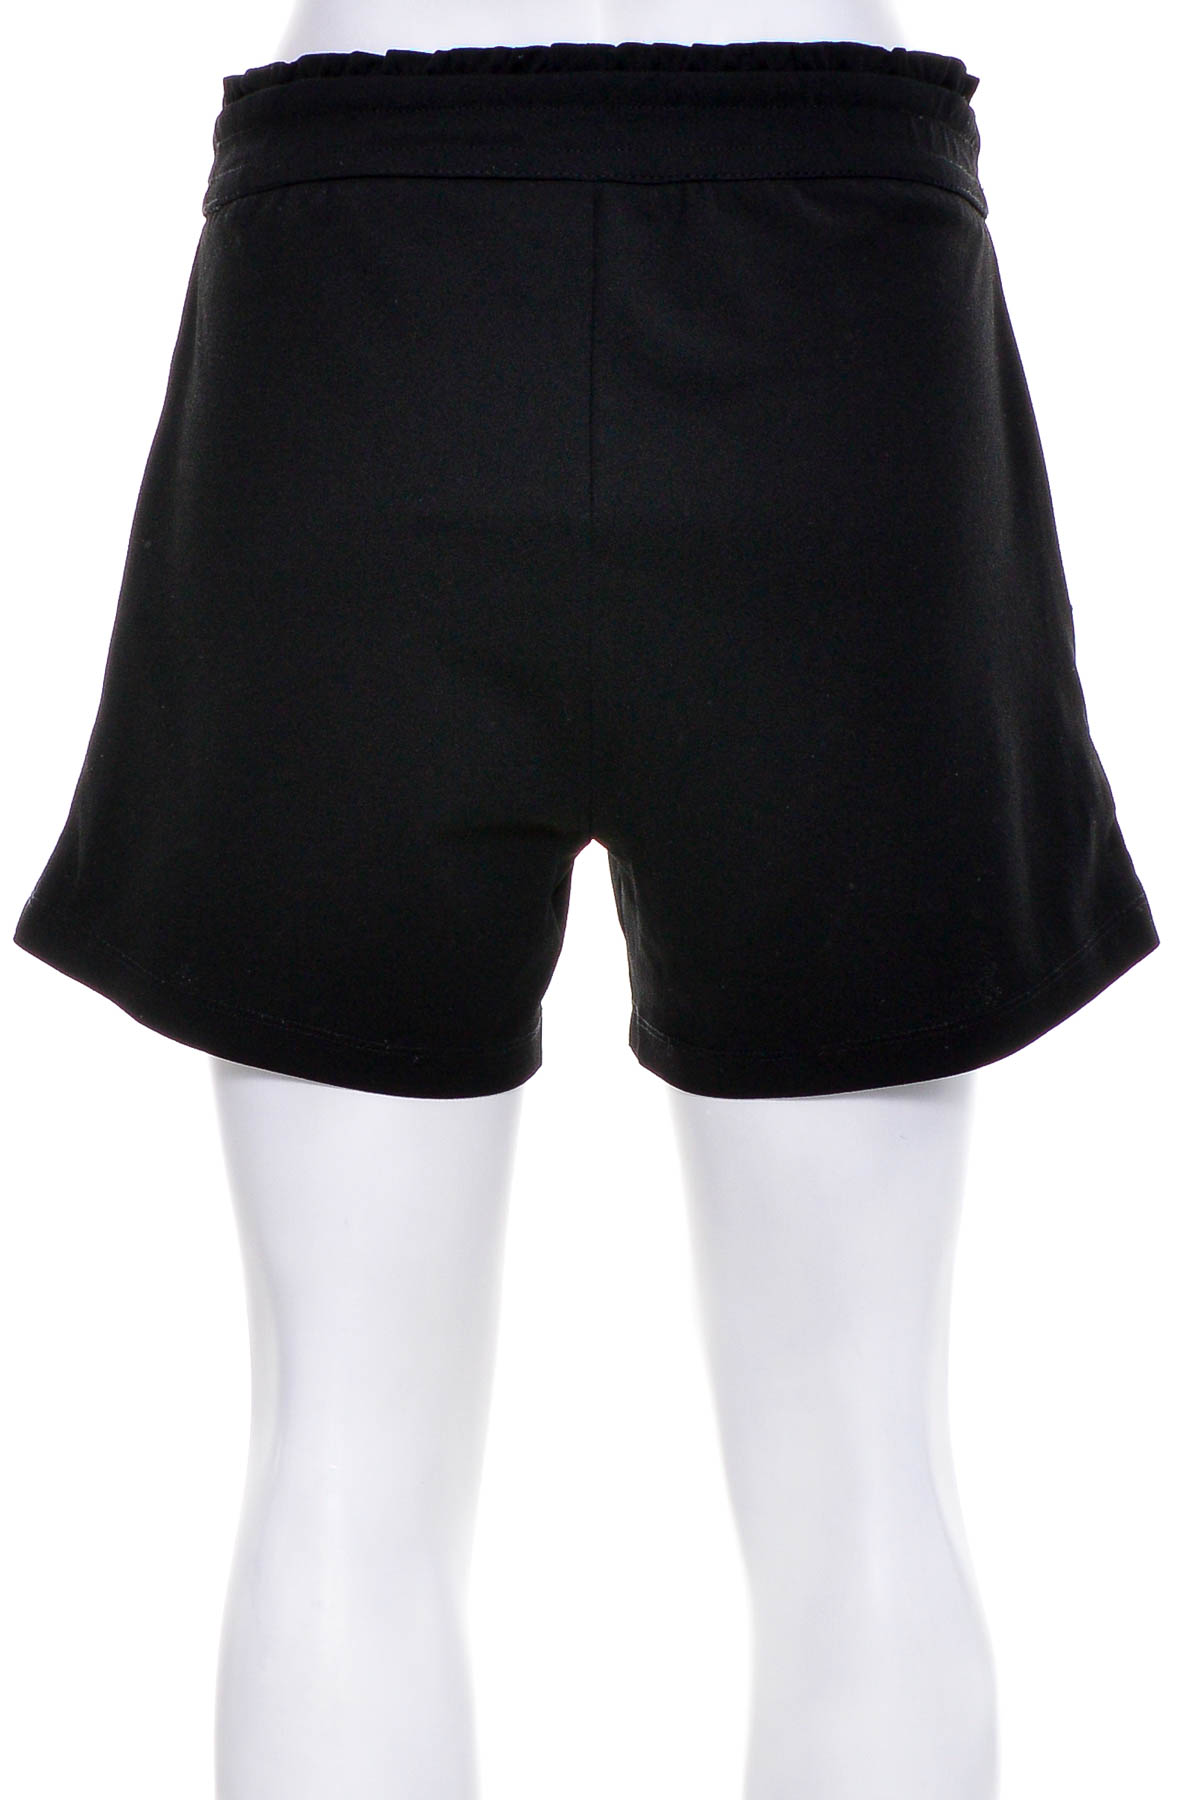 Female shorts - Jacqueline de Yong - 1